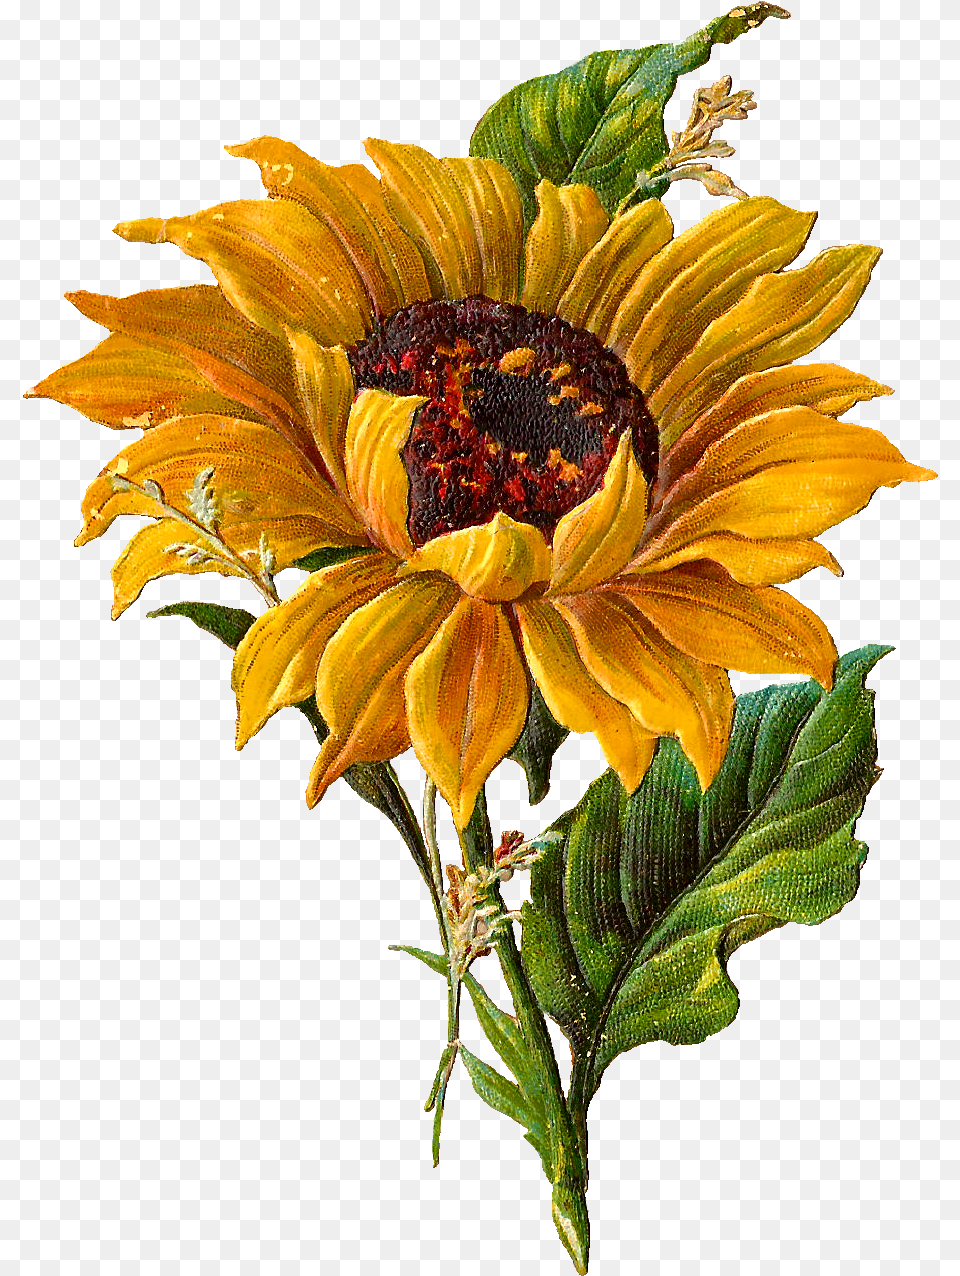 Clipart Sun Vintage Clipart Sun Vintage Transparent Van Gogh Sunflowers, Flower, Plant, Sunflower, Daisy Free Png